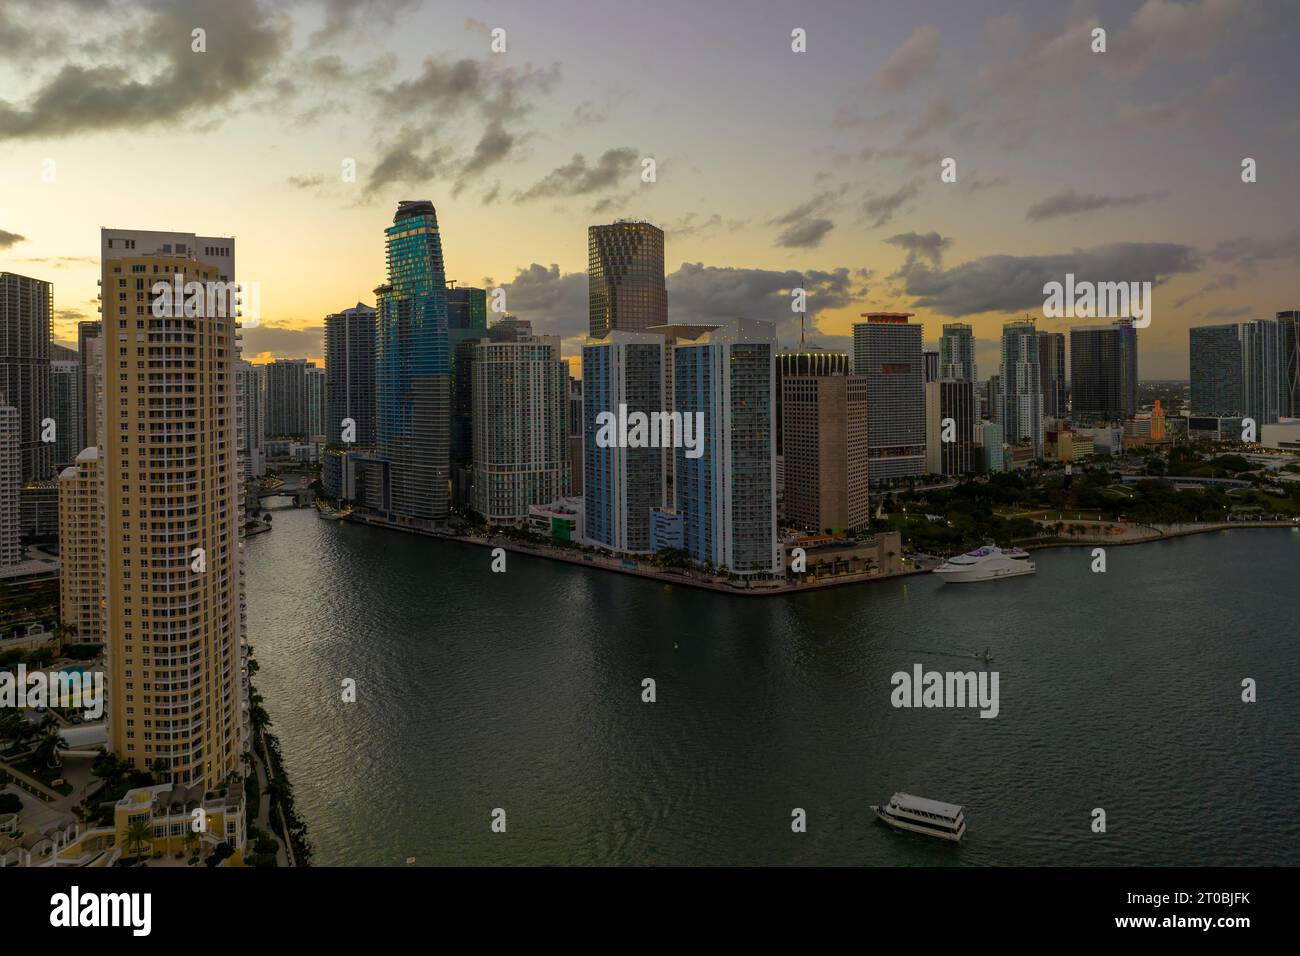 Abendliche Stadtlandschaft im Stadtteil Miami Brickell in Florida, USA. Skyline mit dunklen Hochhäuser im modernen amerikanischen megapol Stockfoto